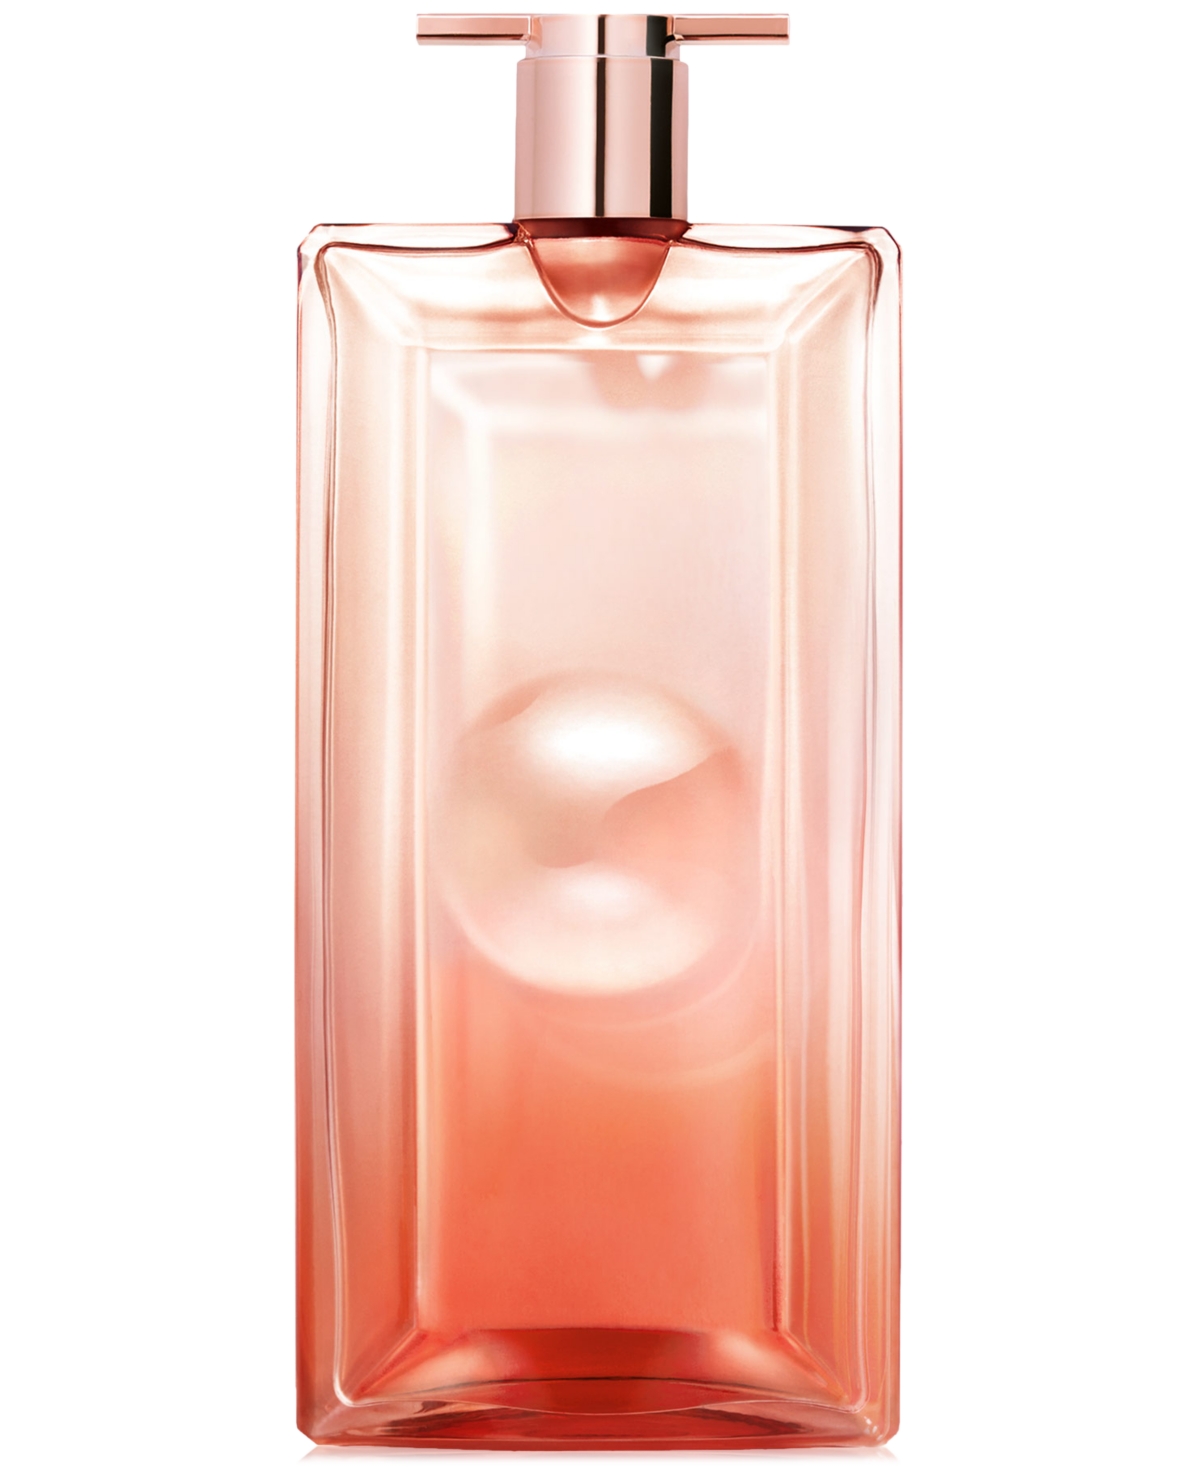 Lancôme Idole Now Eau De Parfum, 1.7 oz